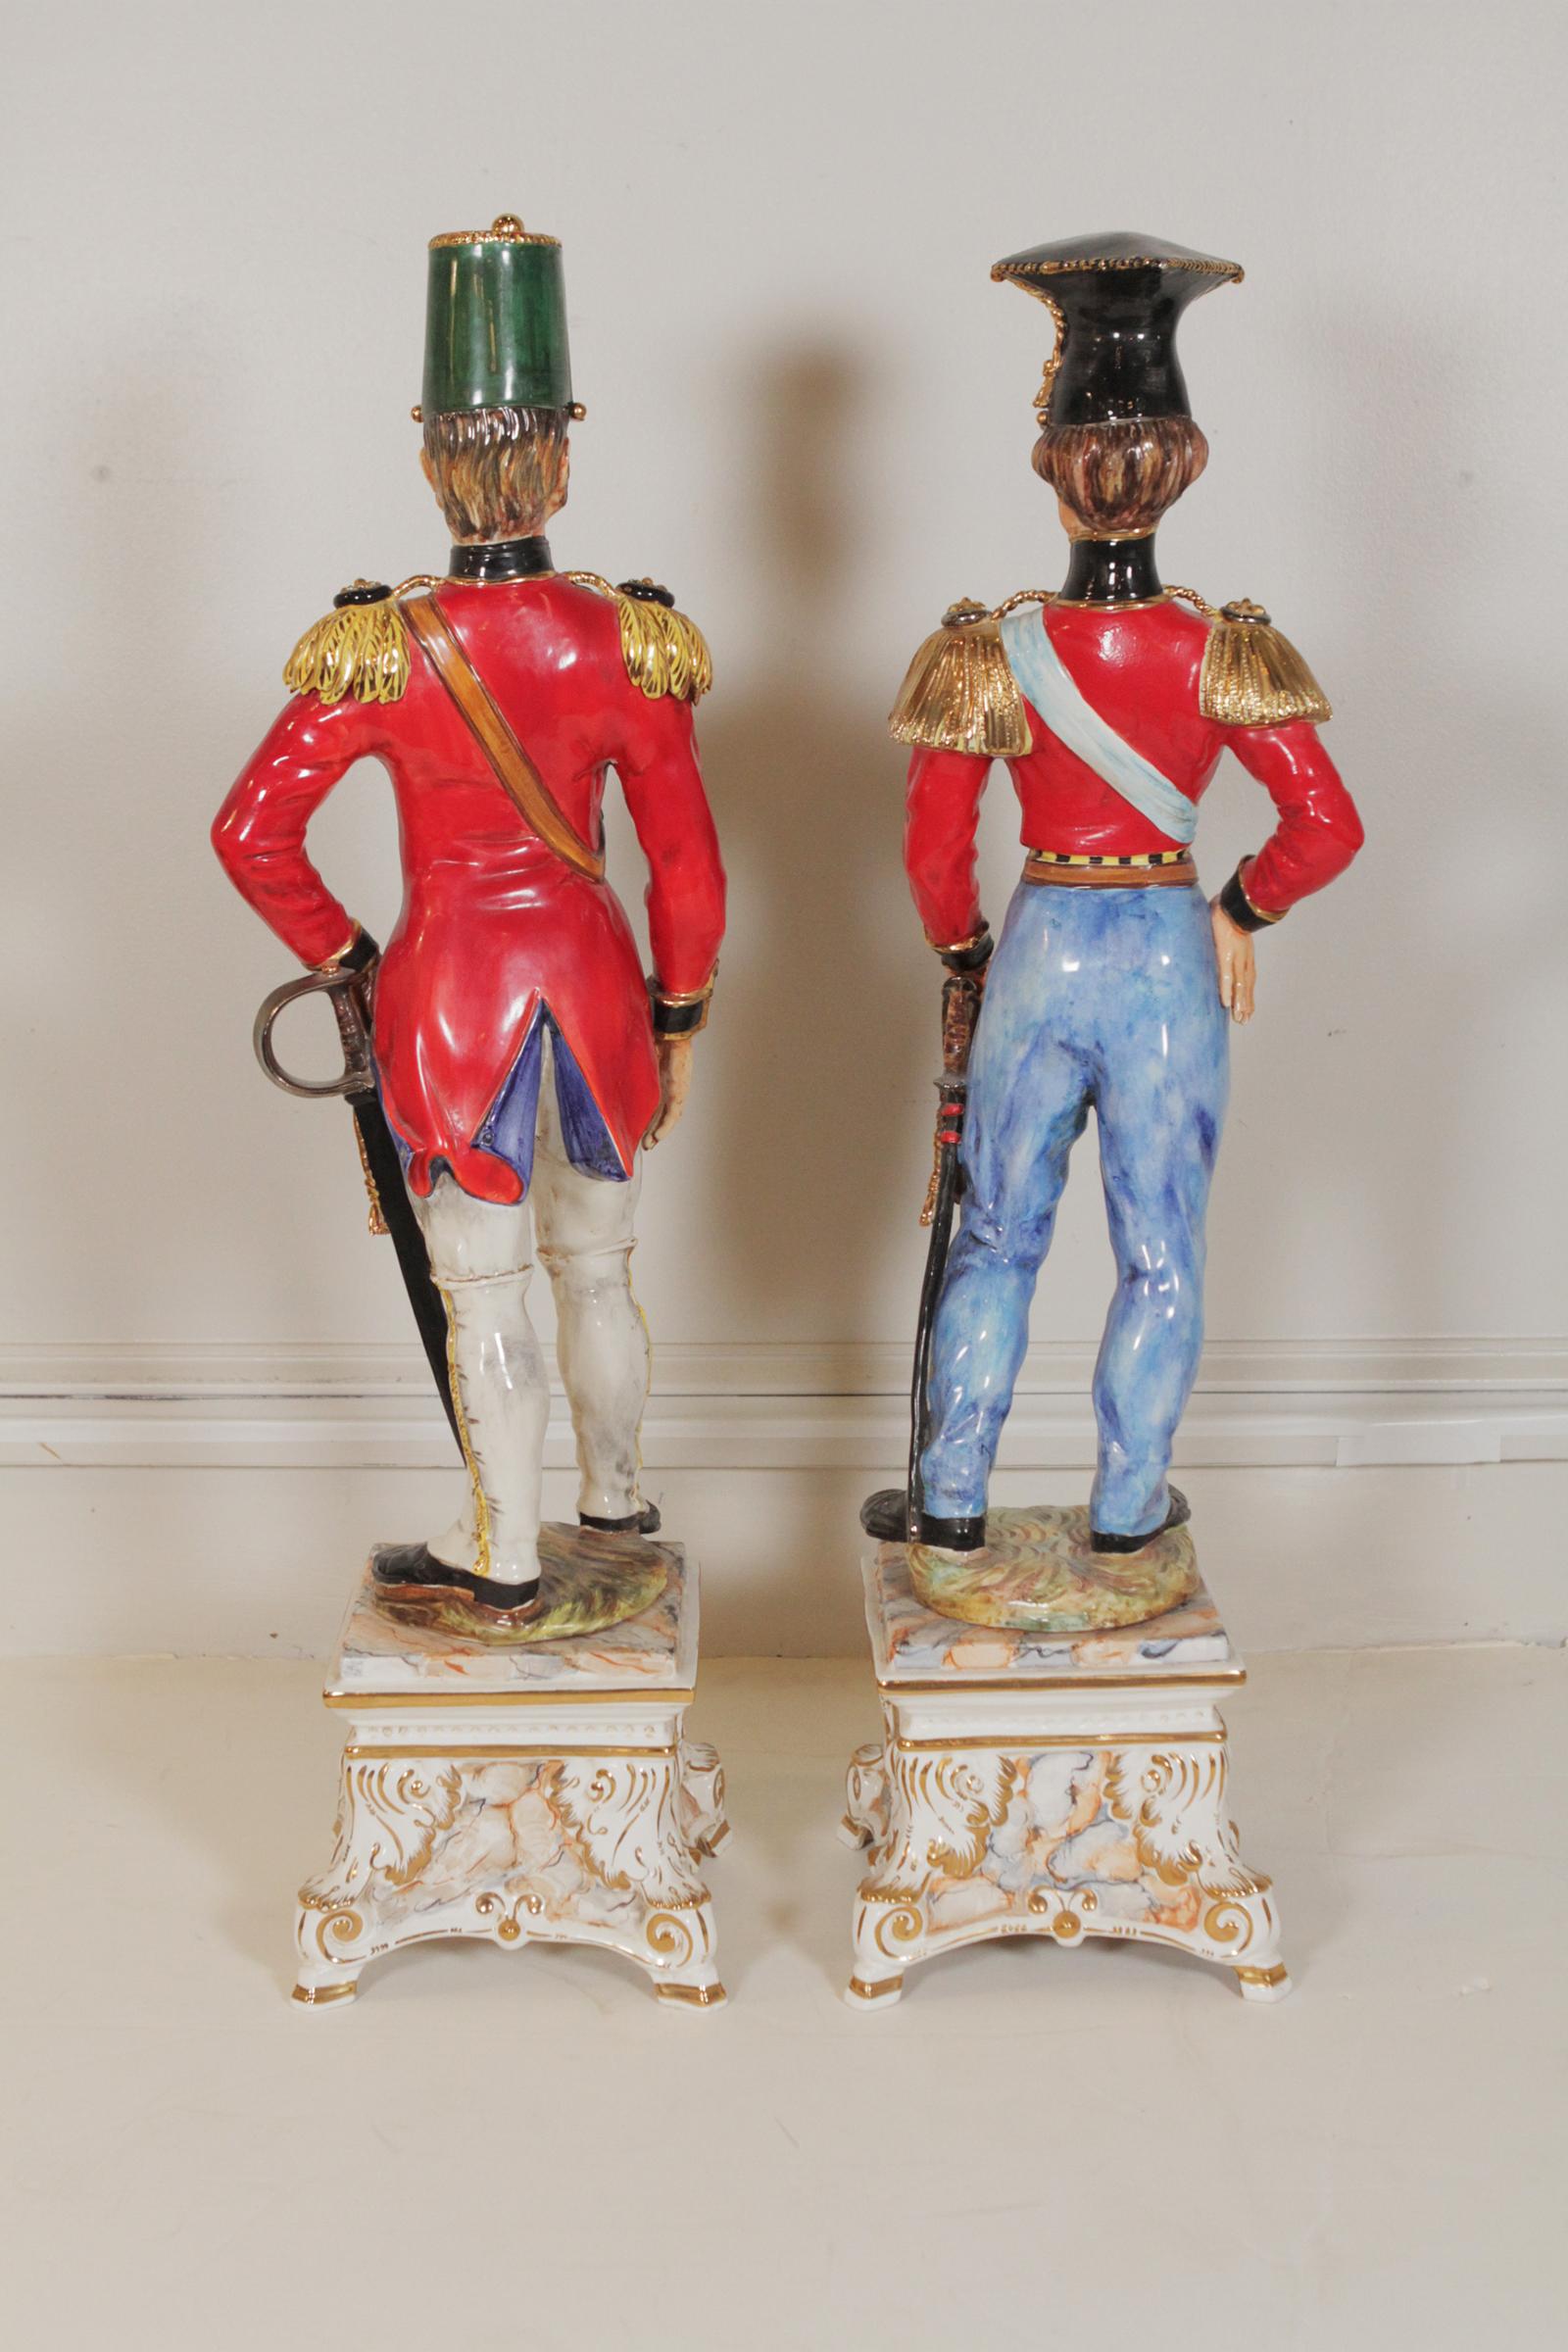 ceramic soldier figurines